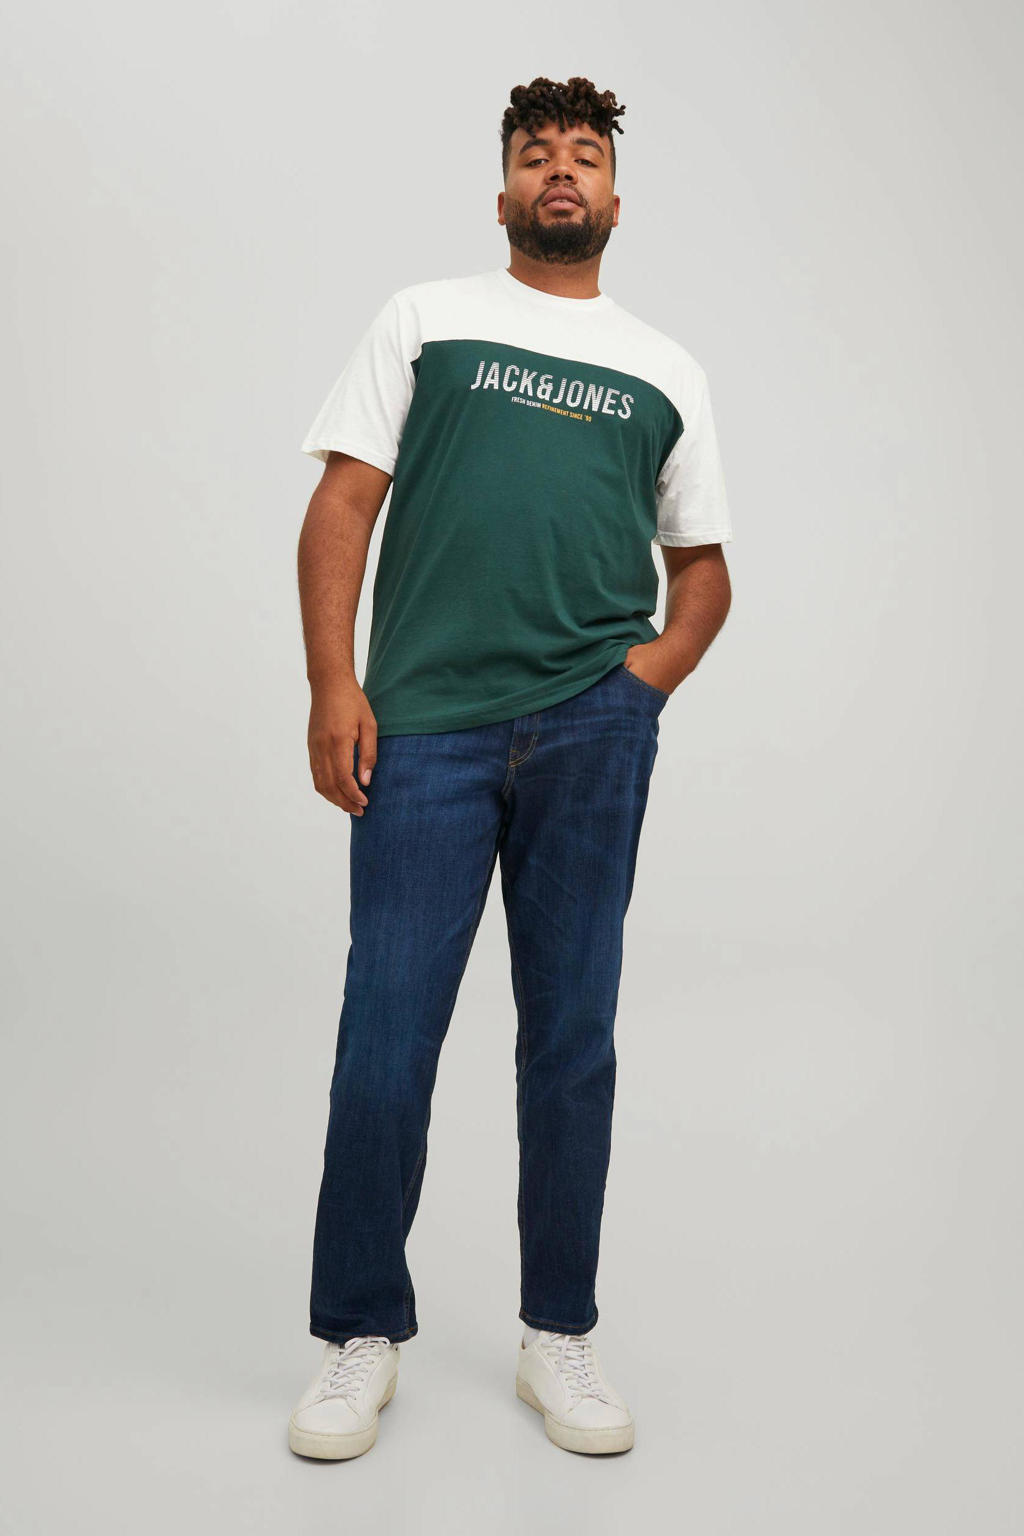 Groene heren JACK & JONES PLUS SIZE regular fit T-shirt Plus Size van katoen met logo dessin, korte mouwen en ronde hals